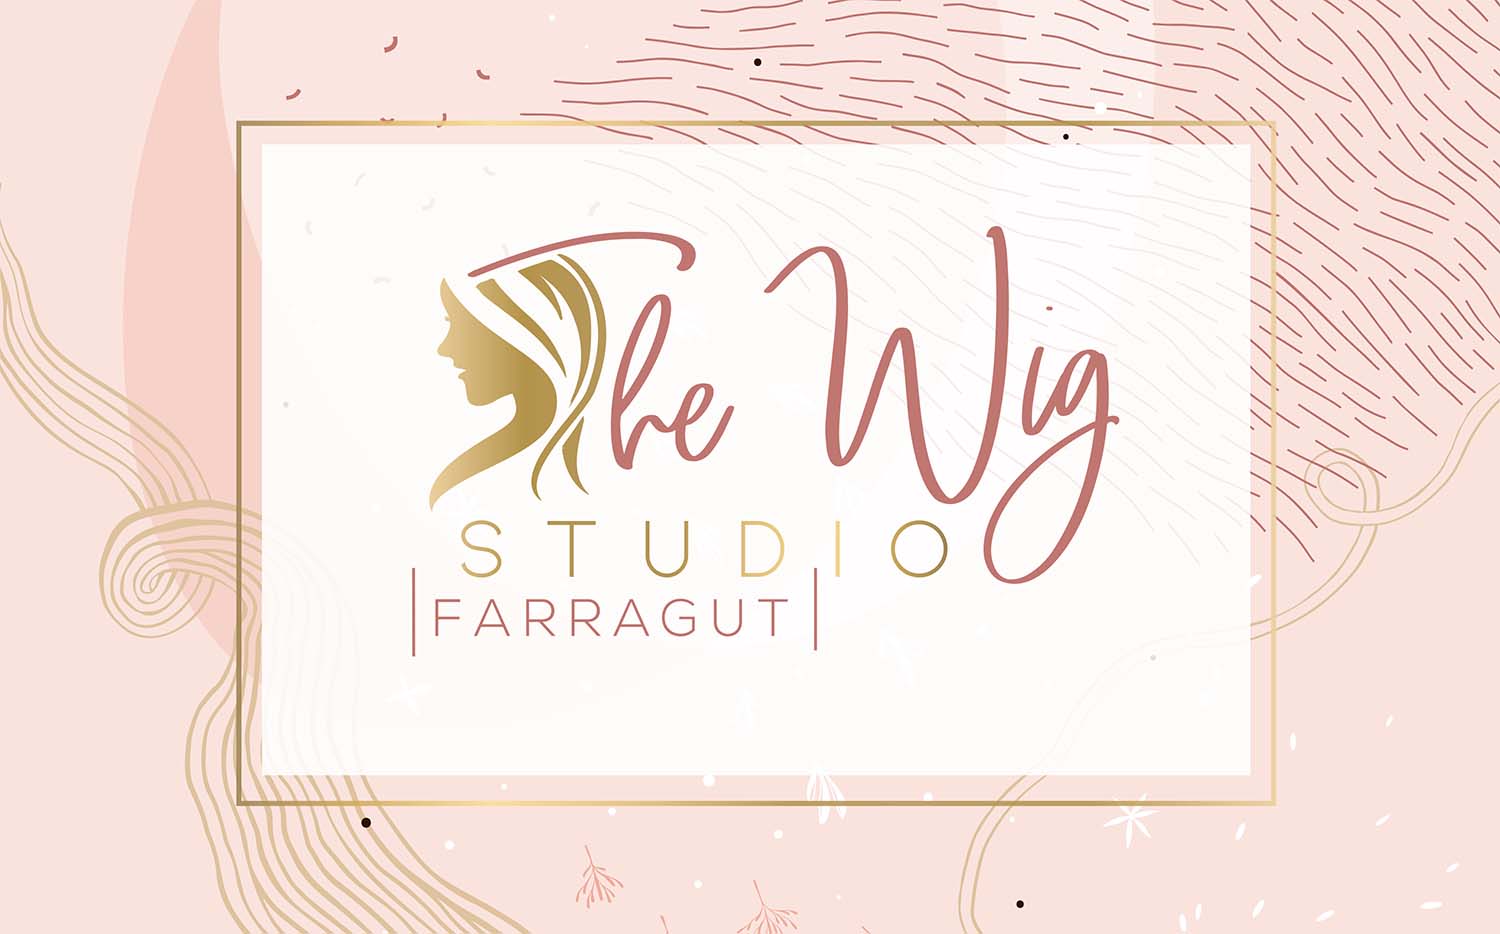 The Wig Studio Farragut